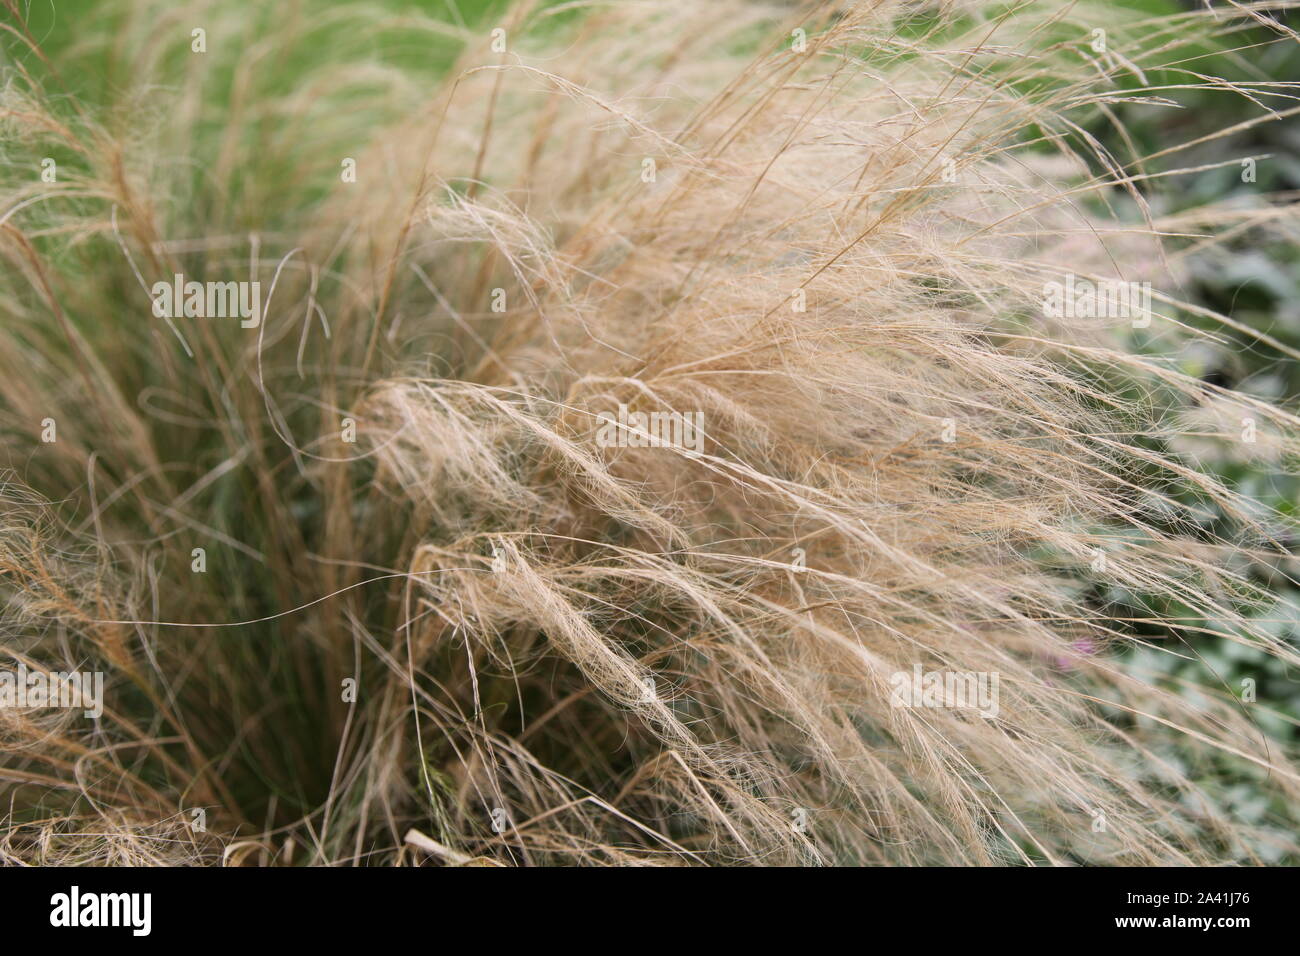 Feder Gras, Pferdeschwanz, weht im Wind in einem Garten in tagsüber Sonnenschein Stockfoto